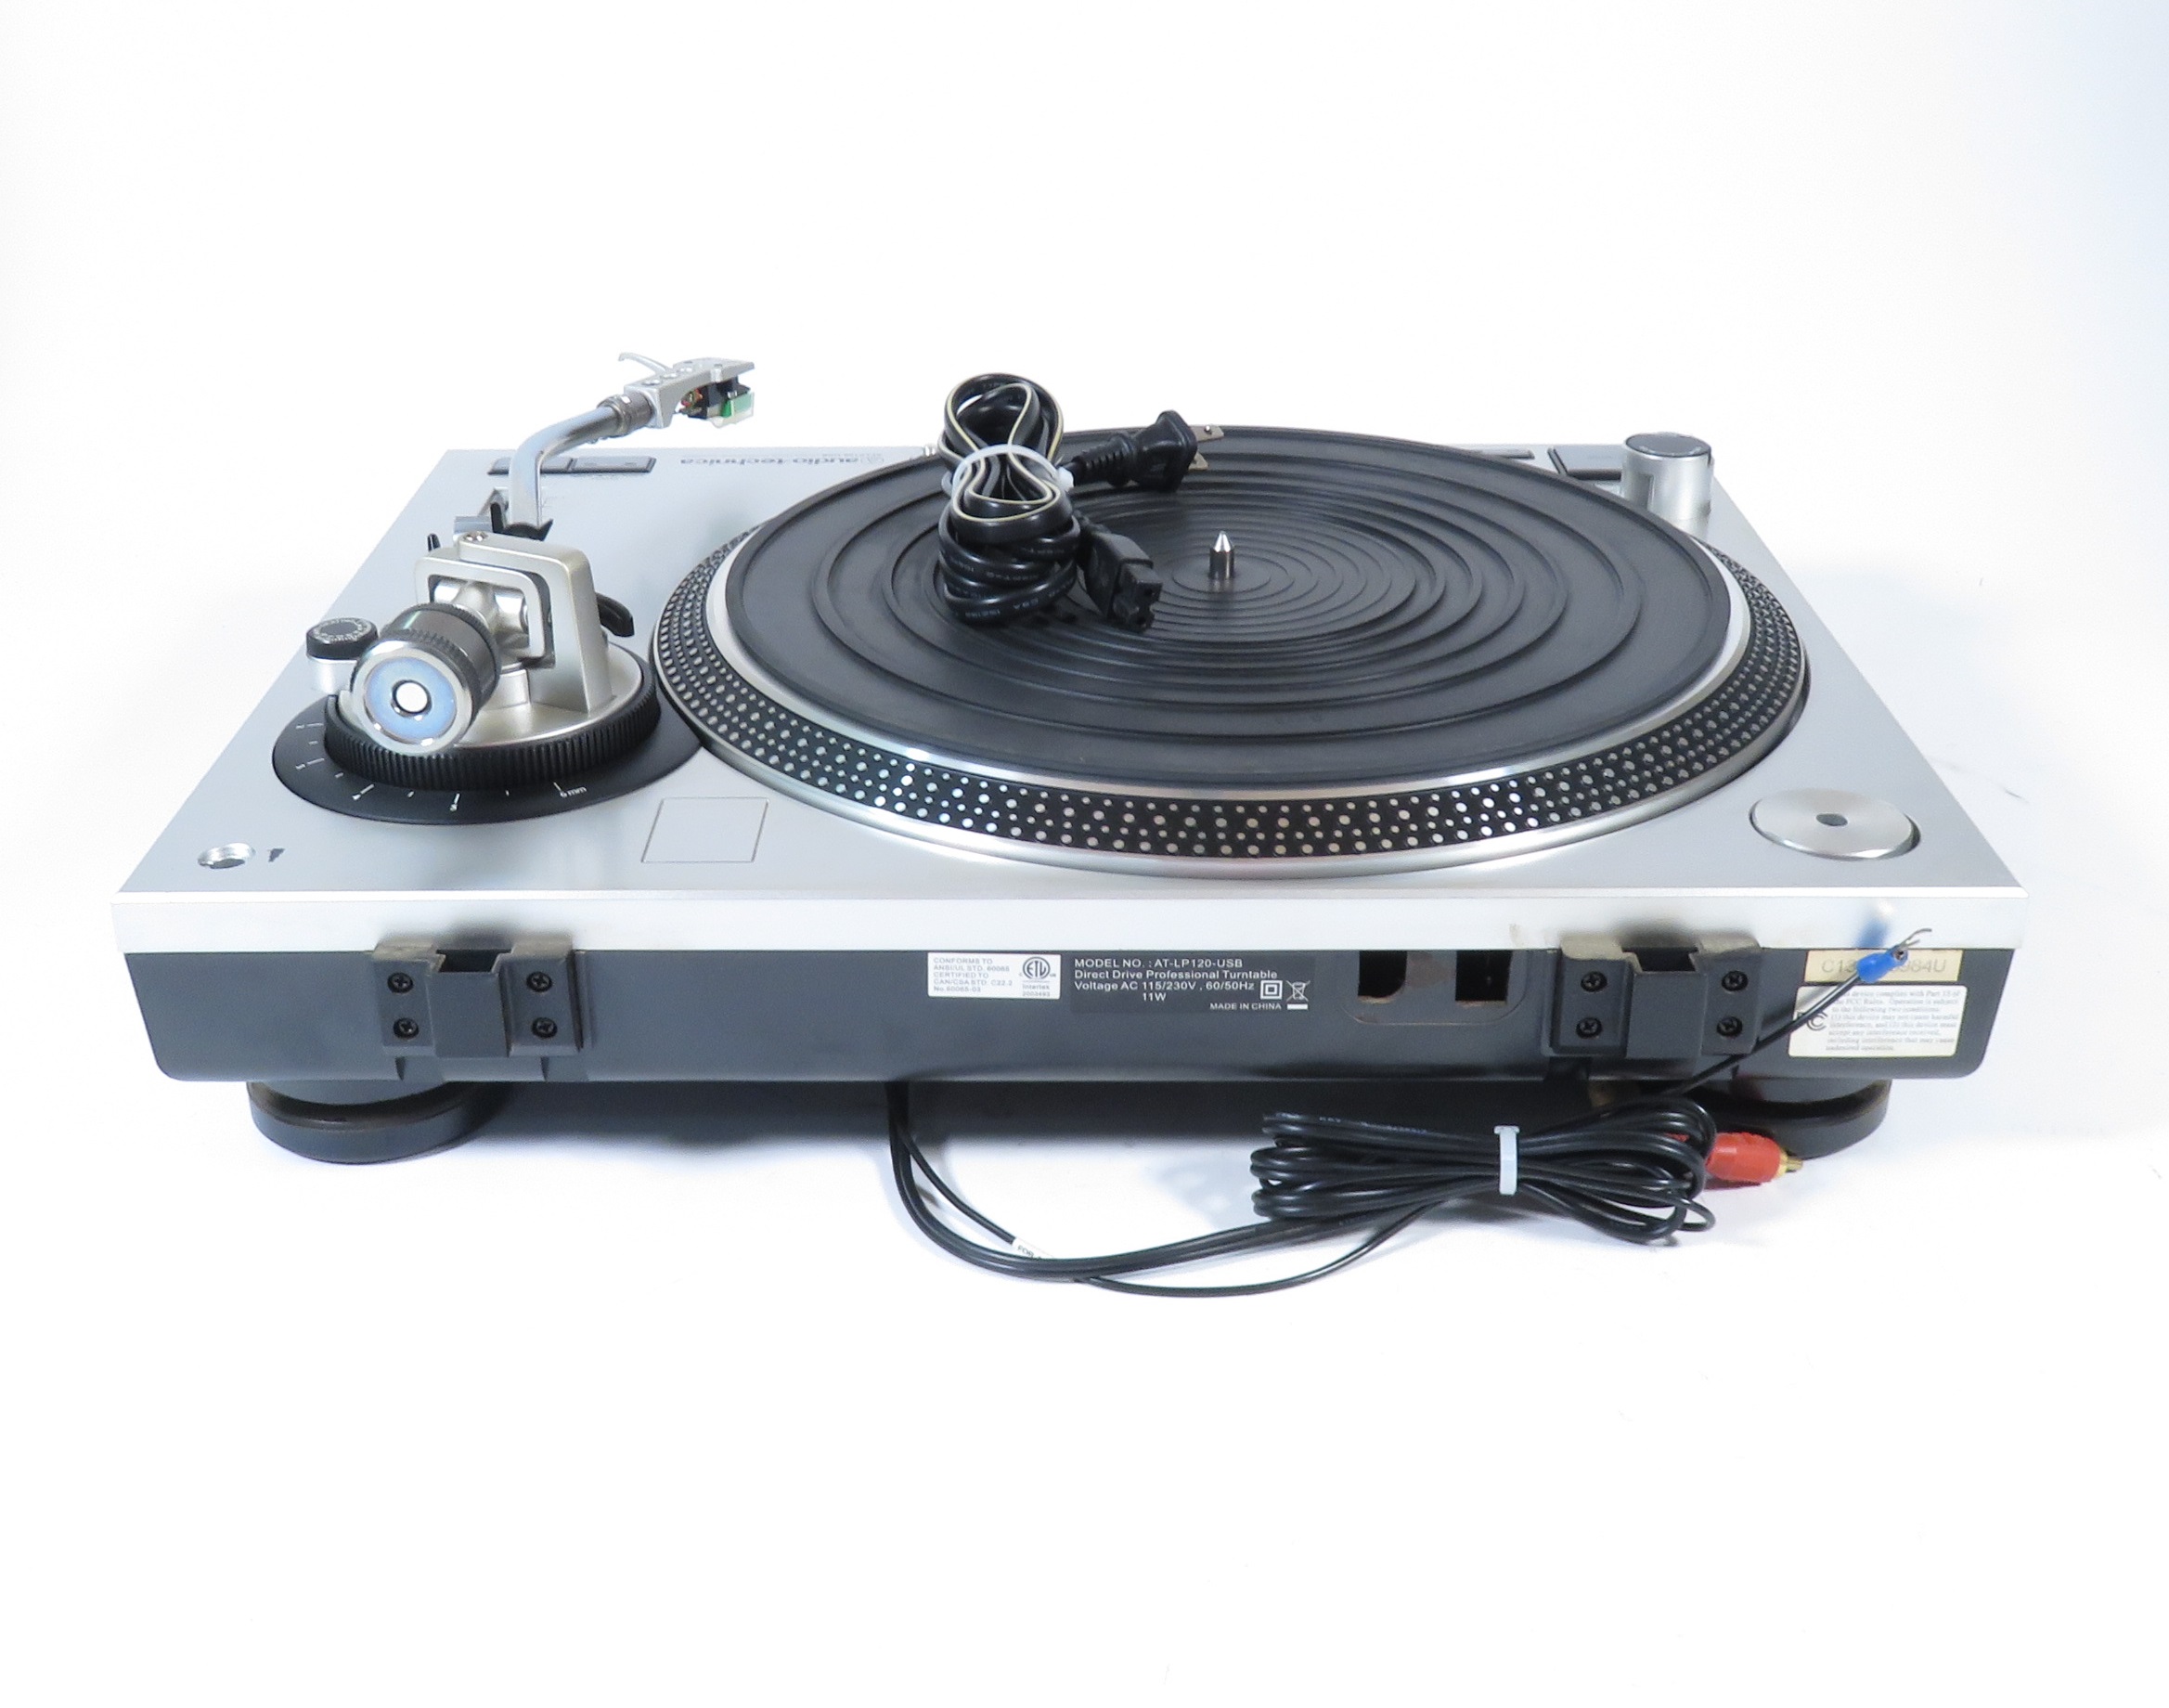 AUDIO-TECHNICA LP 120 – The Vintage Audio Shop